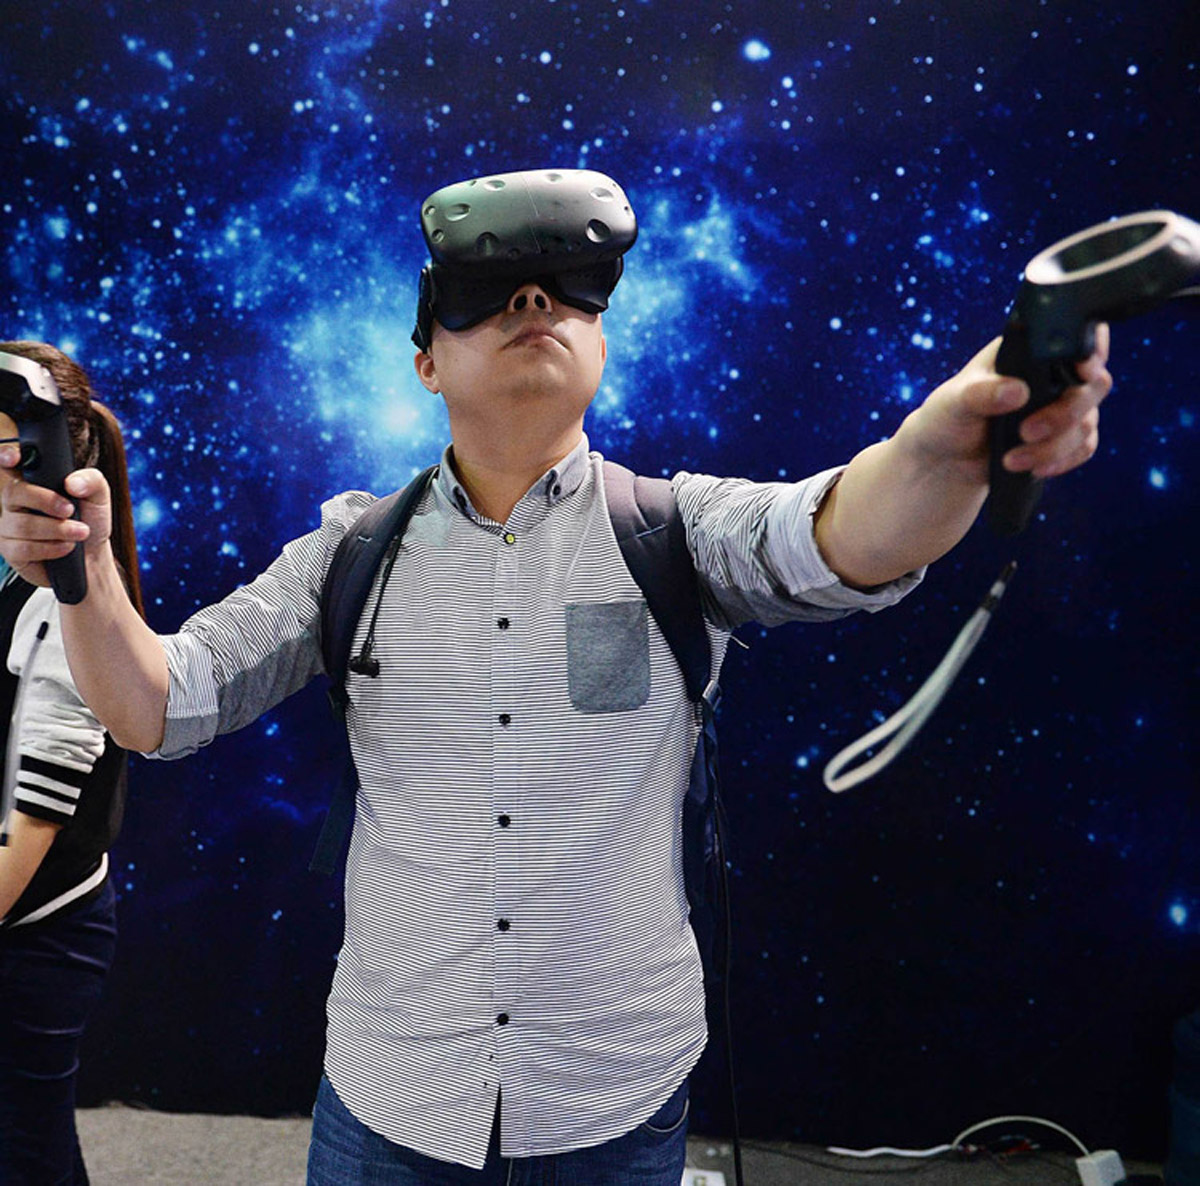 措美校园安全VR虚拟现实体验馆